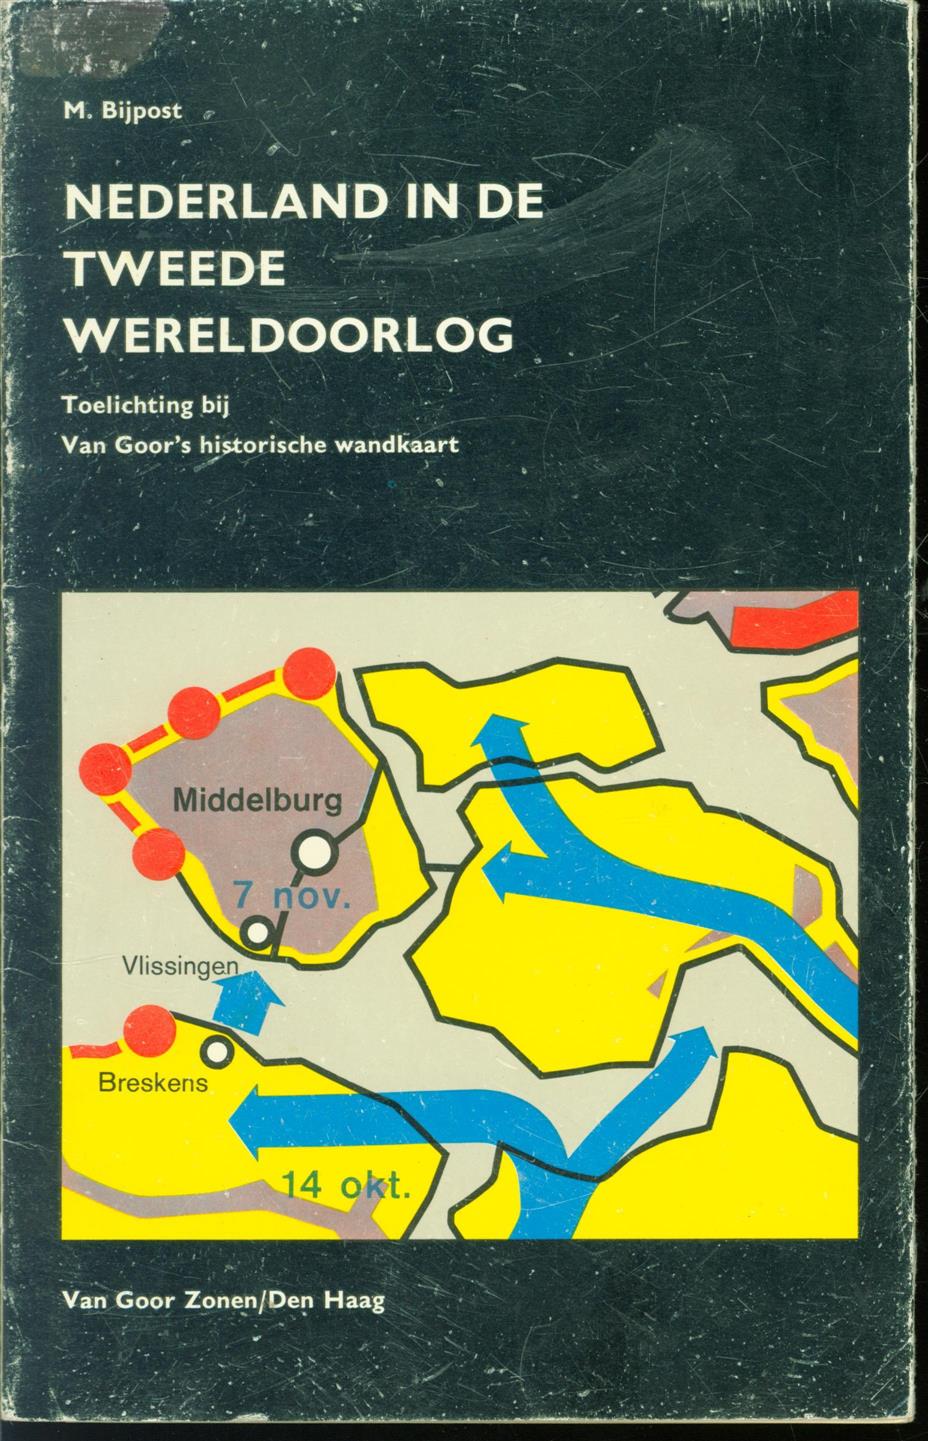 M Bijpost - Nederland in de Tweede Wereldoorlog: toelichting bij Van Goor's historische wandkaart.